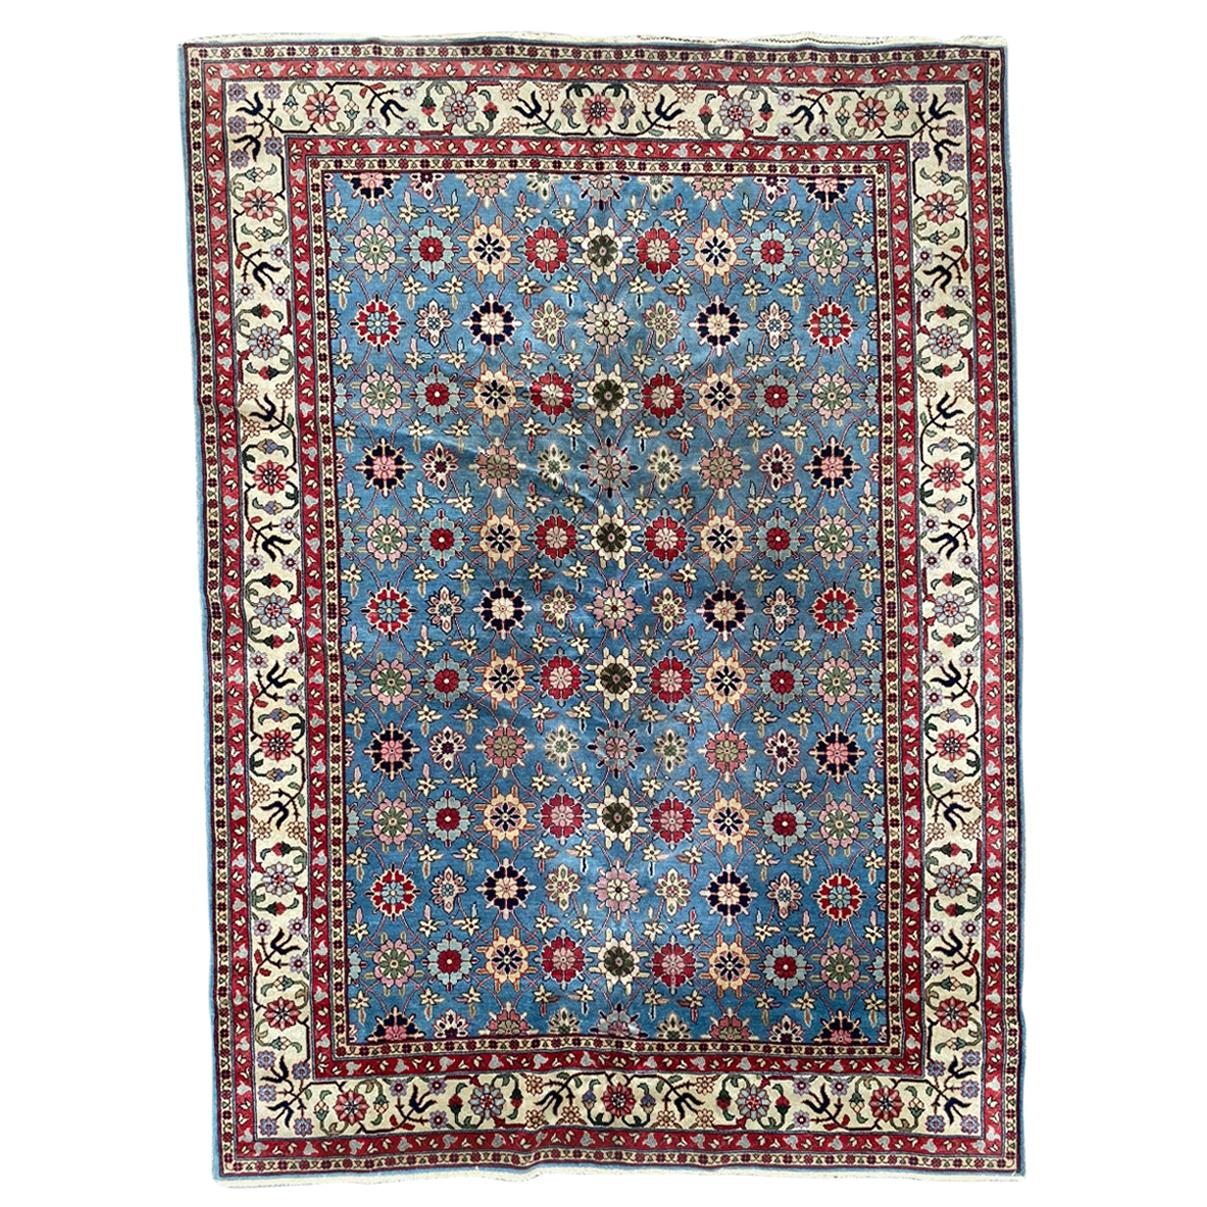 Schöner großer transylvanianischer Vintage-Teppich